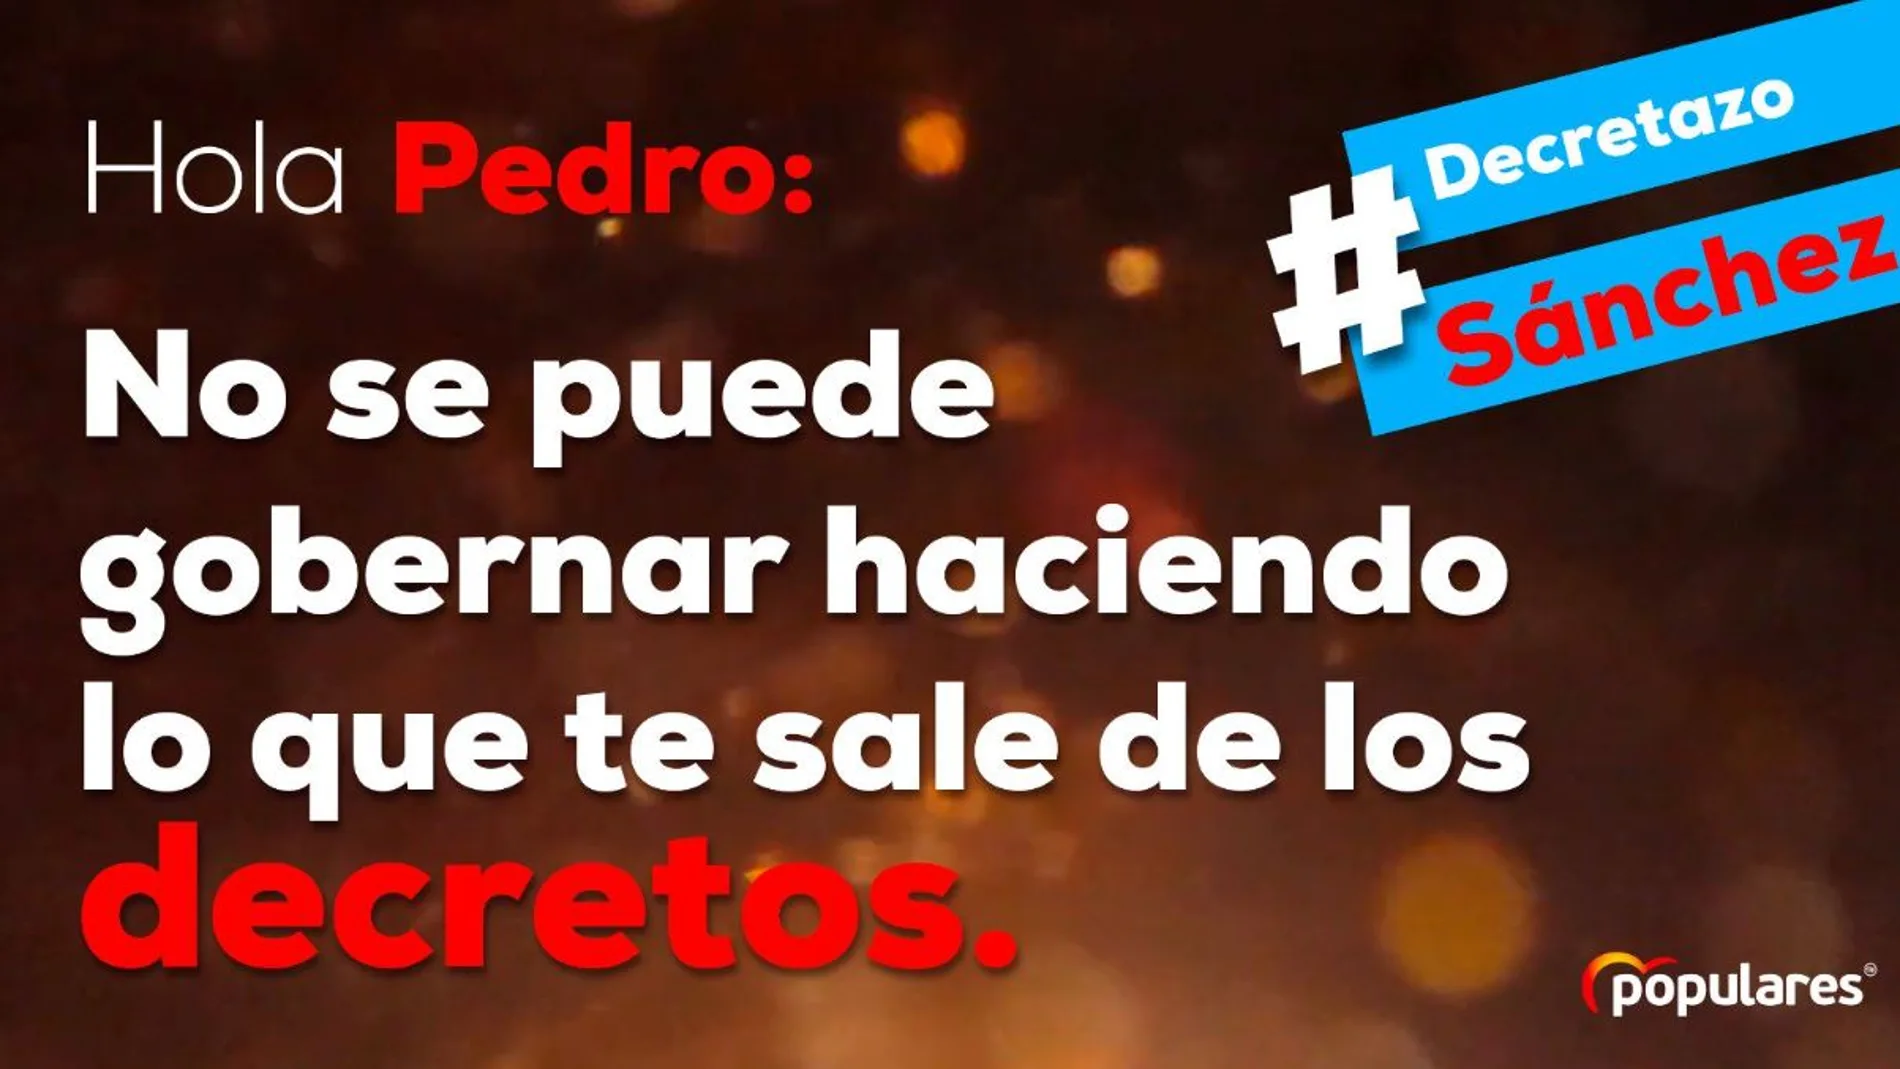 Eslogan del PP usado en su campaña #decretazosánchez